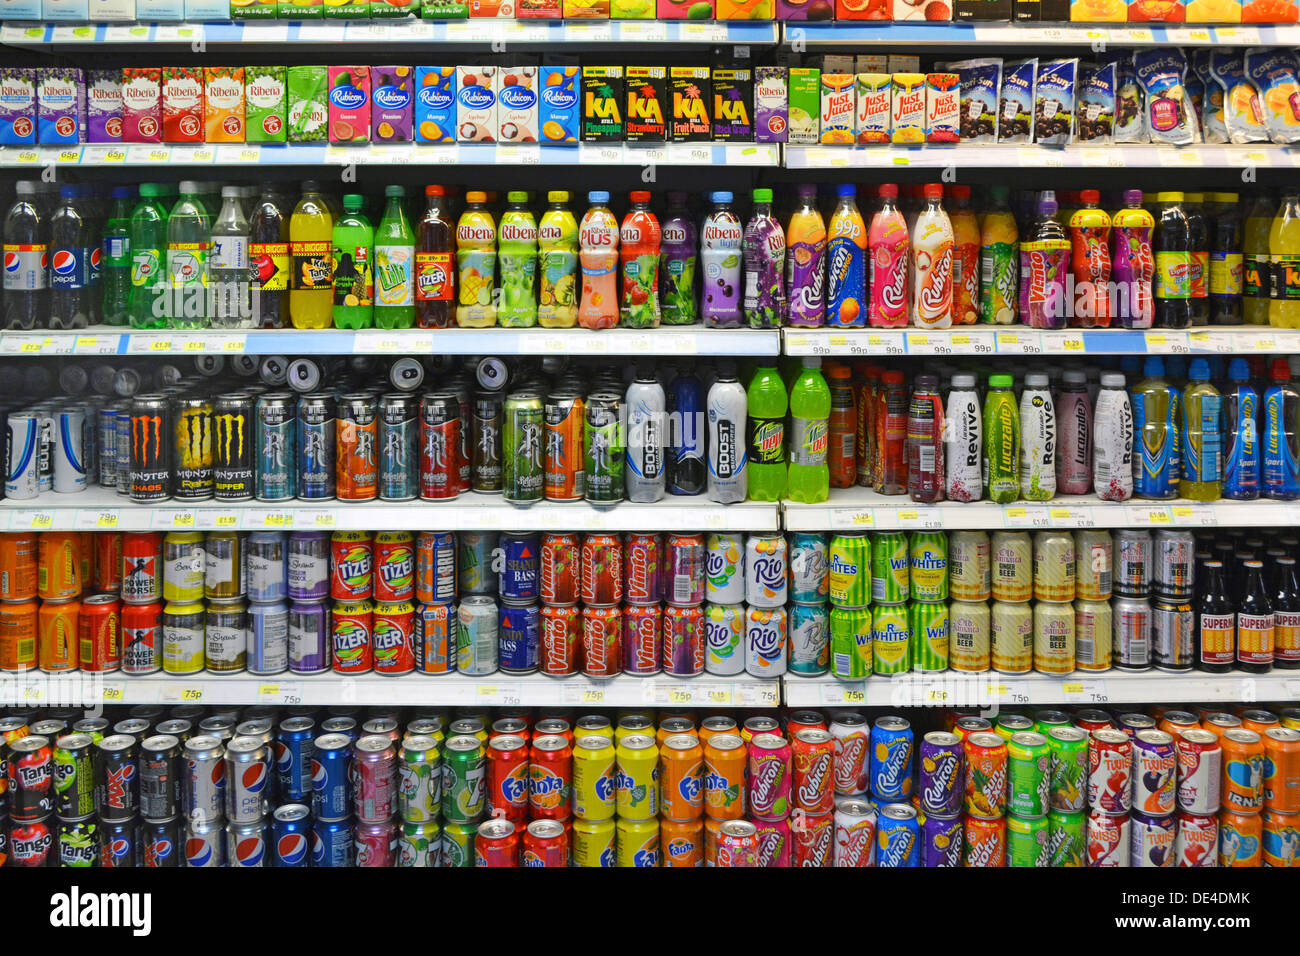 Posible impuesto sobre las botellas y latas de refrescos azucarados algunos con alto contenido de azúcar y bebidas gaseosas de CO2 en los estantes dentro de la tienda de conveniencia Londres England Reino Unido Foto de stock